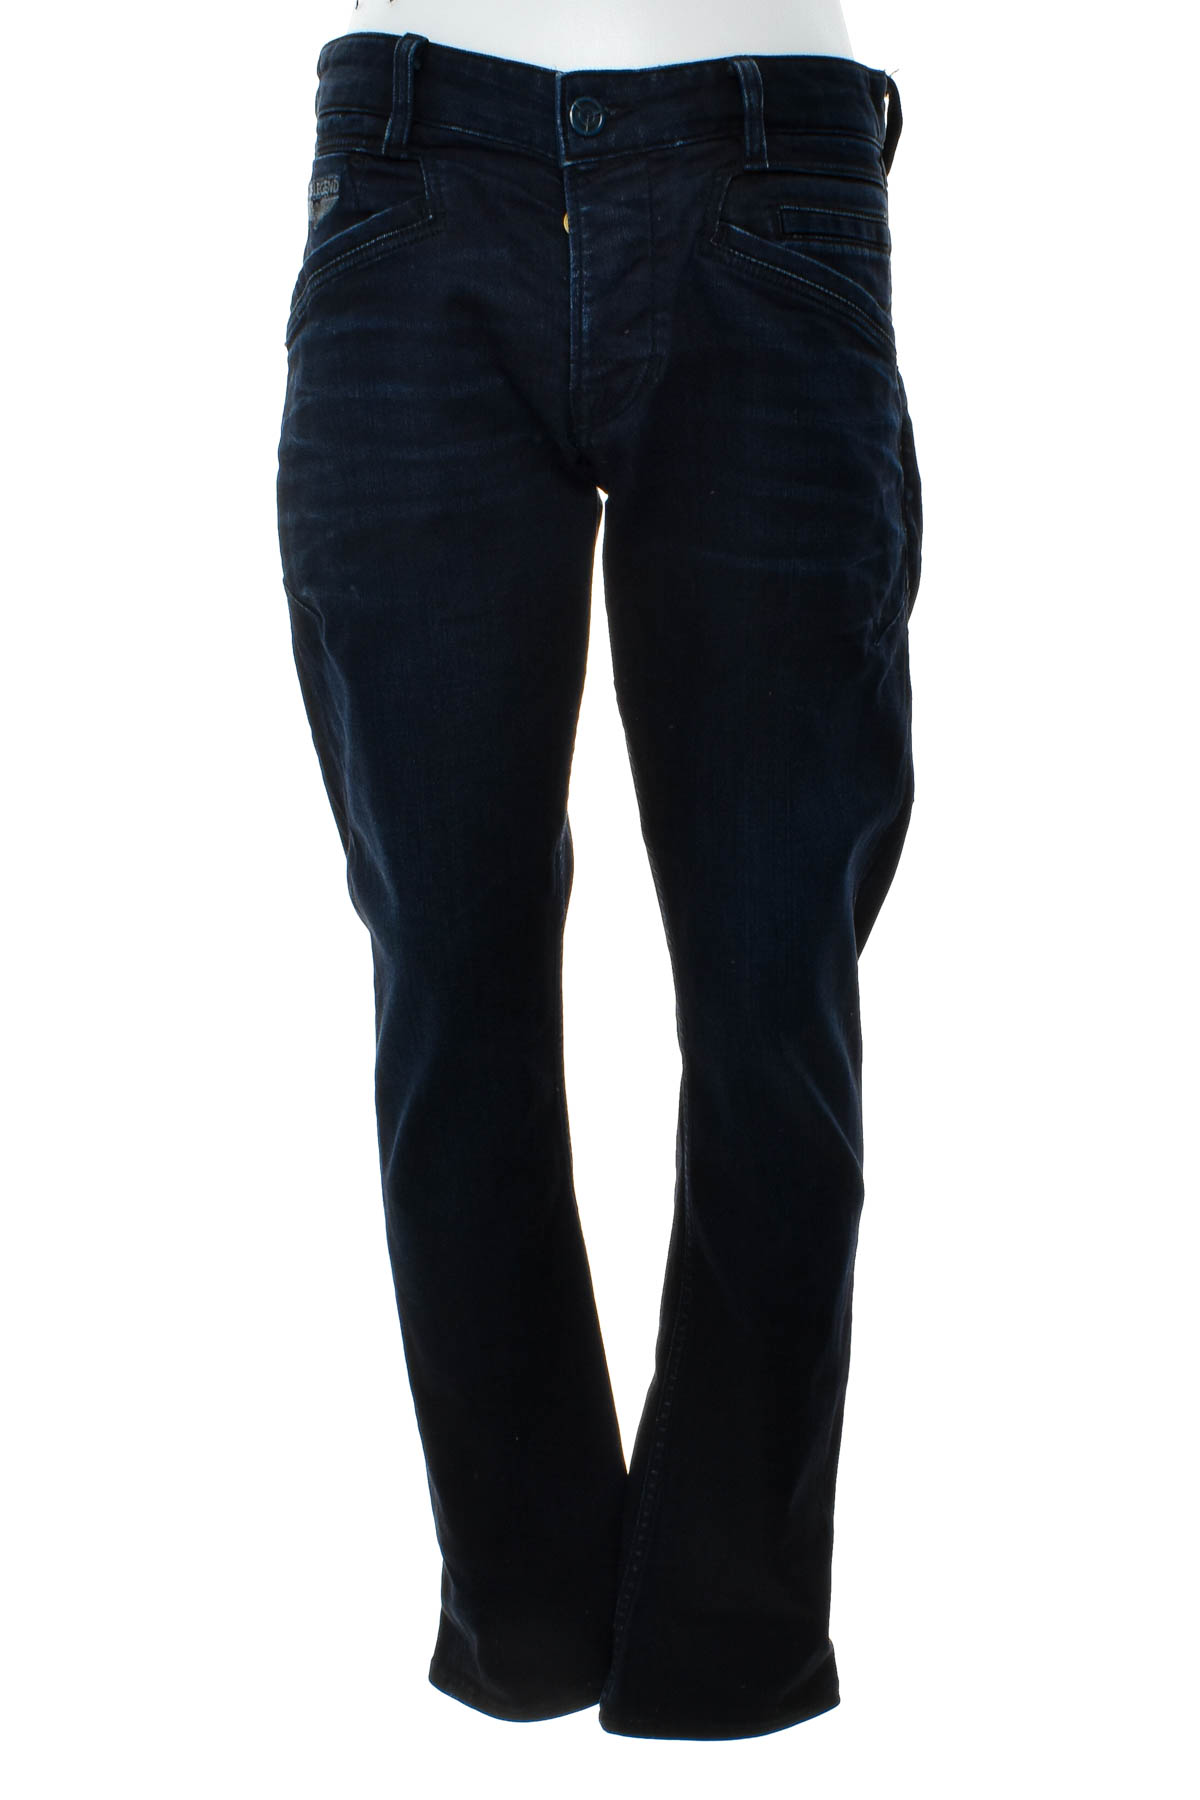 Men's jeans - PME Legend - 0